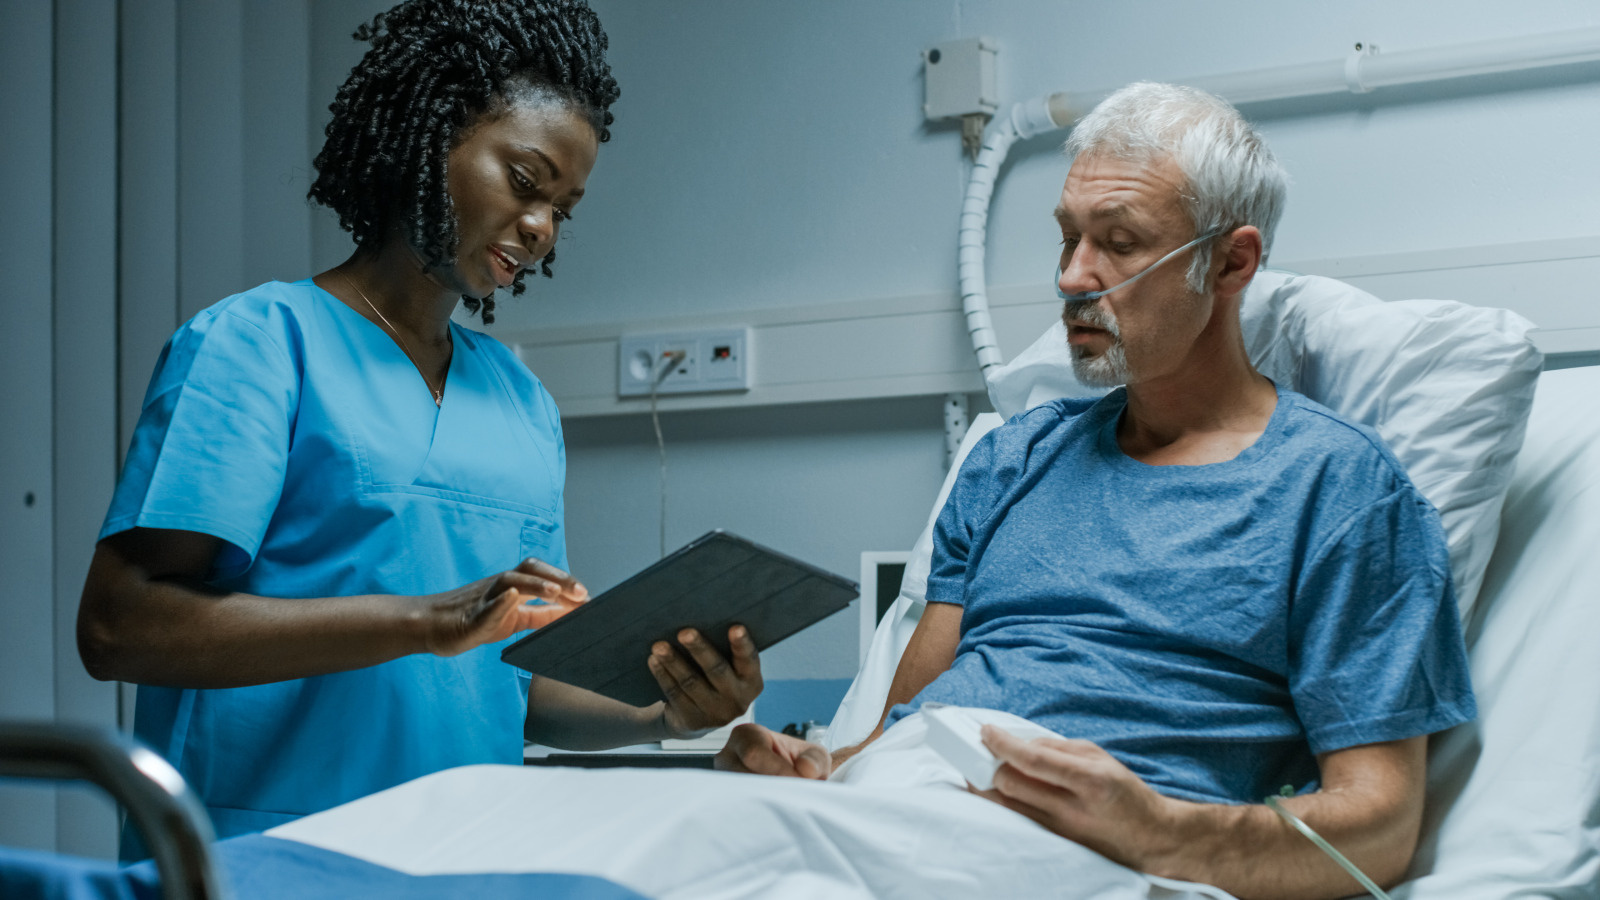 Jeune infirmiere tenant une tablette et un malade alite a l'hopital - Infirmier-e en pratique avancee